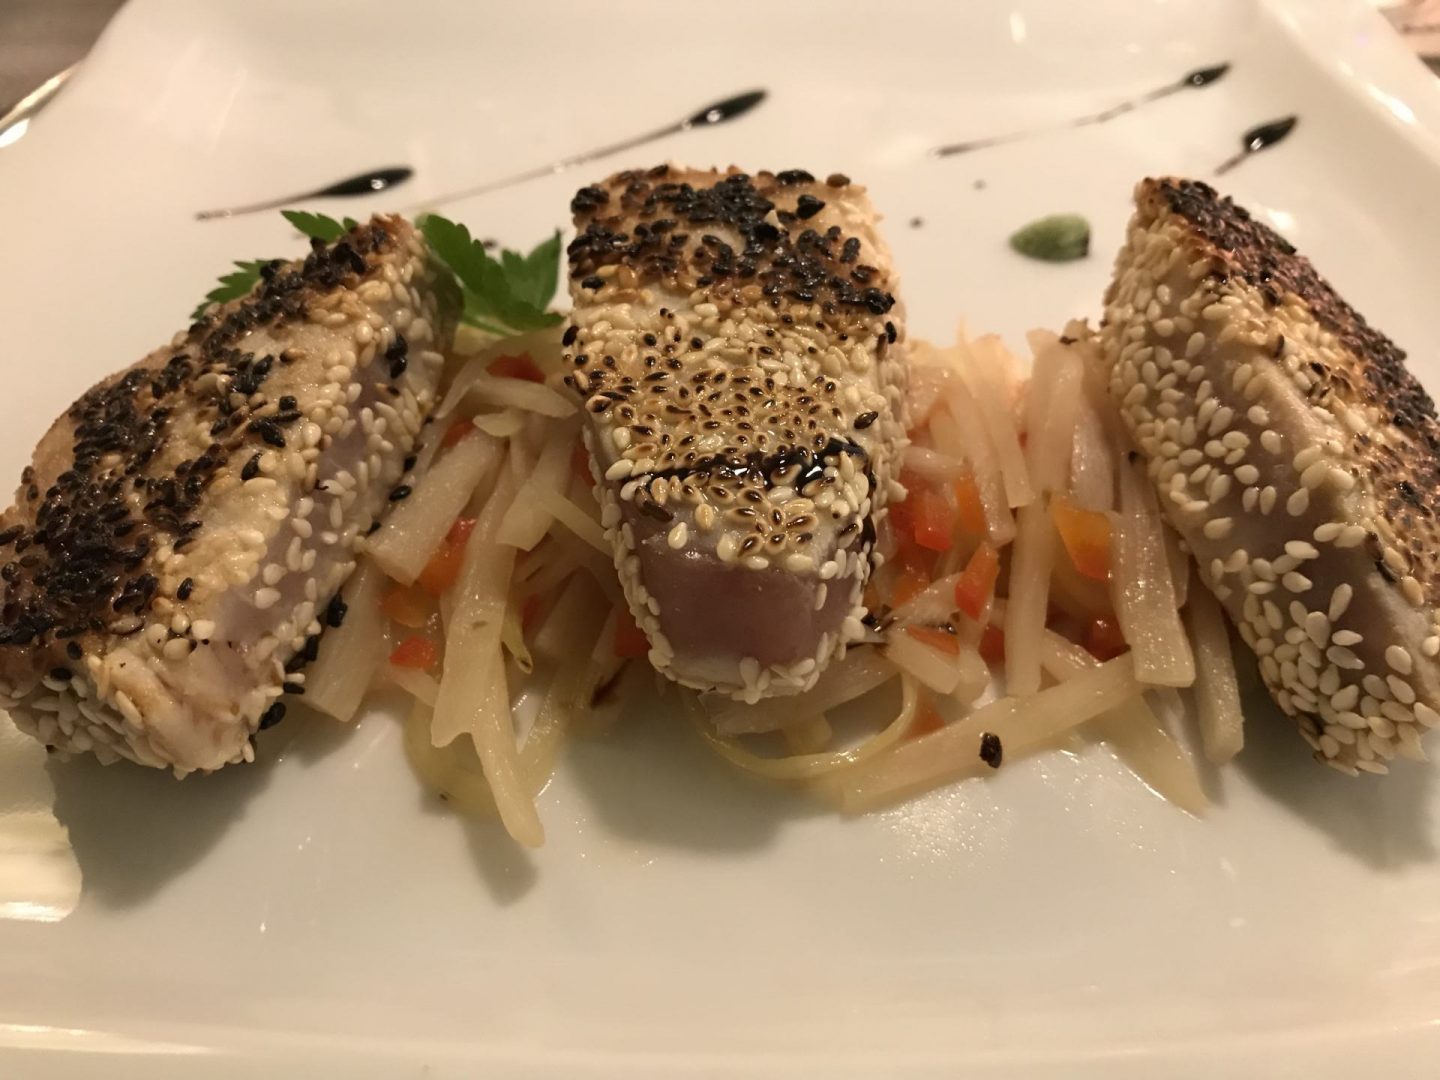 Erfahrung Bewertung Kritik Ollis Restaurant Herne weißer Thunfisch Tunfisch Sesam Staudensellerie Schwarzwurzel Wasabi Foodblog Sternestulle